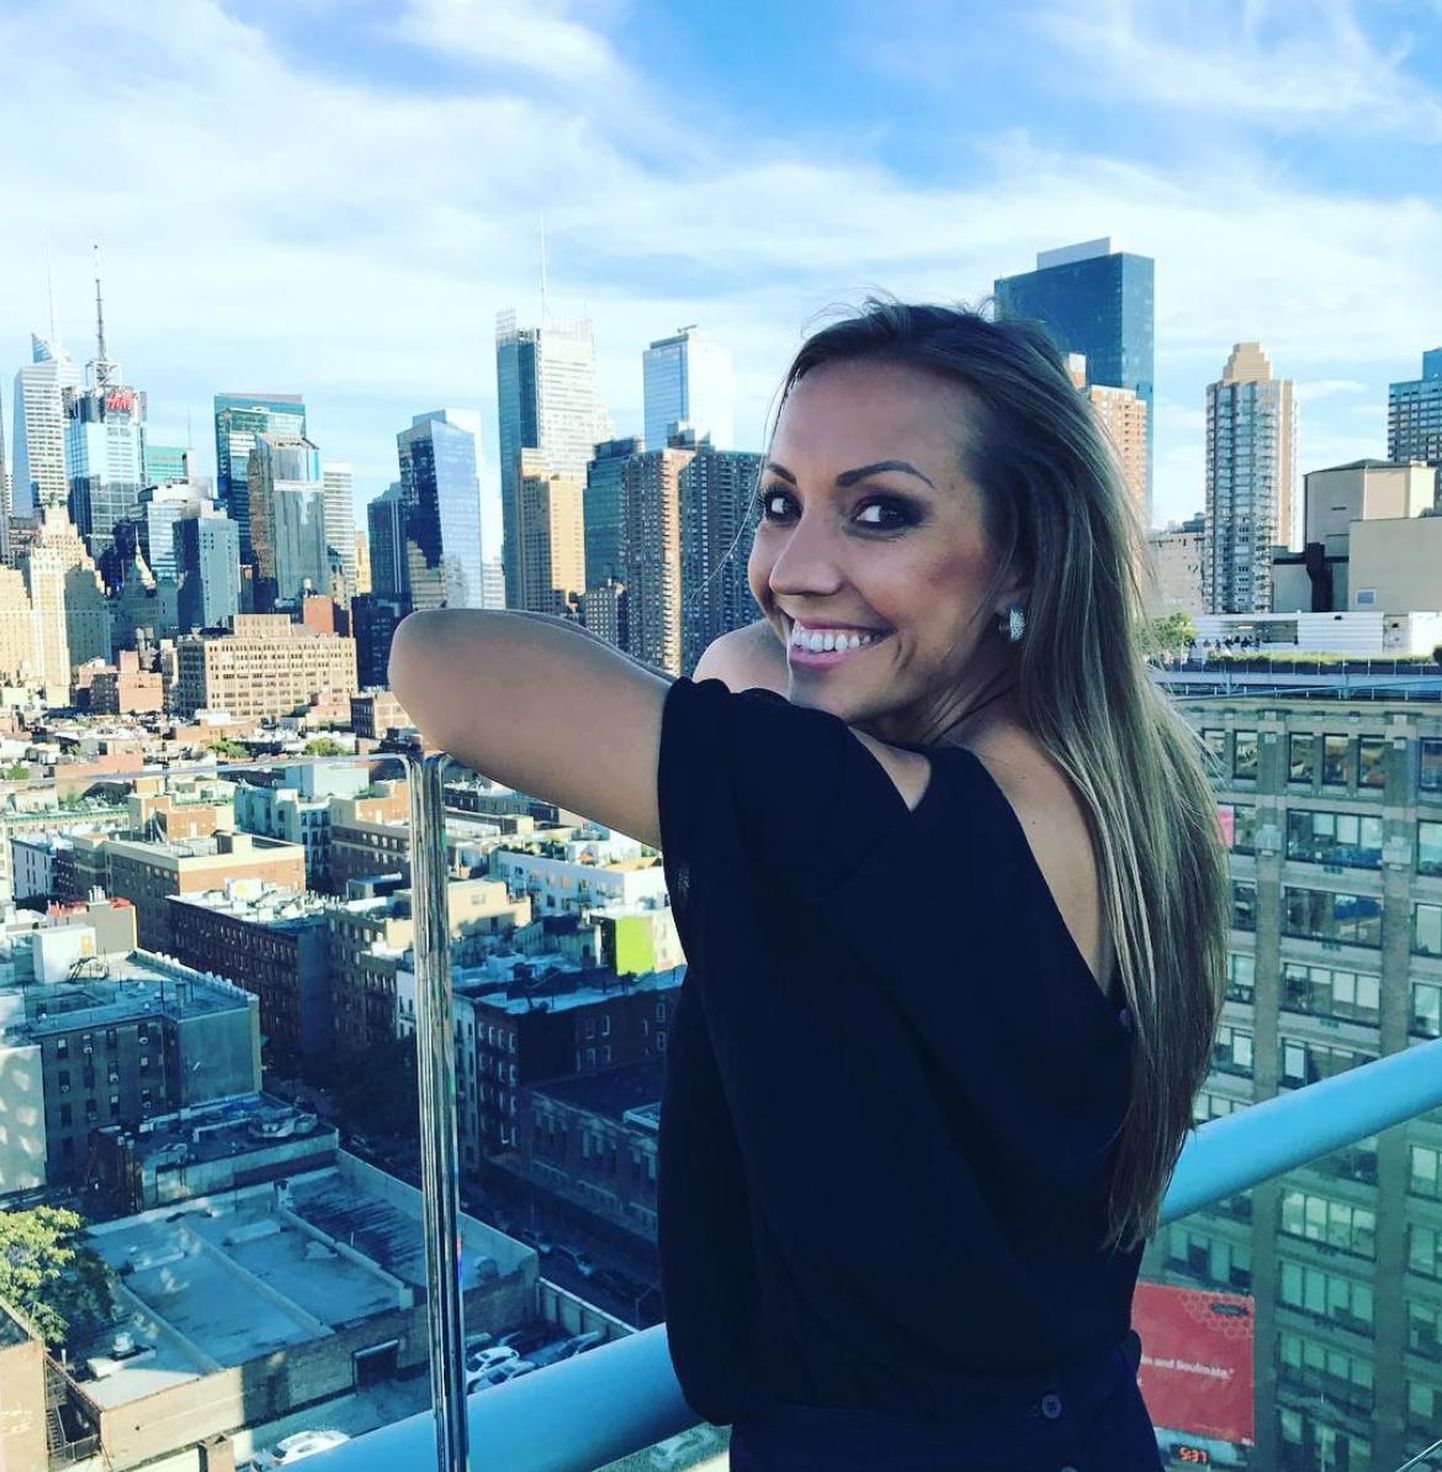 Kertu Jukkumist USAs Samsungi promoüritusel tehtud pilt, mis Instagramis sai allkirjaks «NYC from the rooftop #Unpacked #GalaxyNote8#DoWhatYouCant» ehk «New York katuselt #lahtipakitud #GalaxyNote8 #TeeMidaSaEiSaa.»